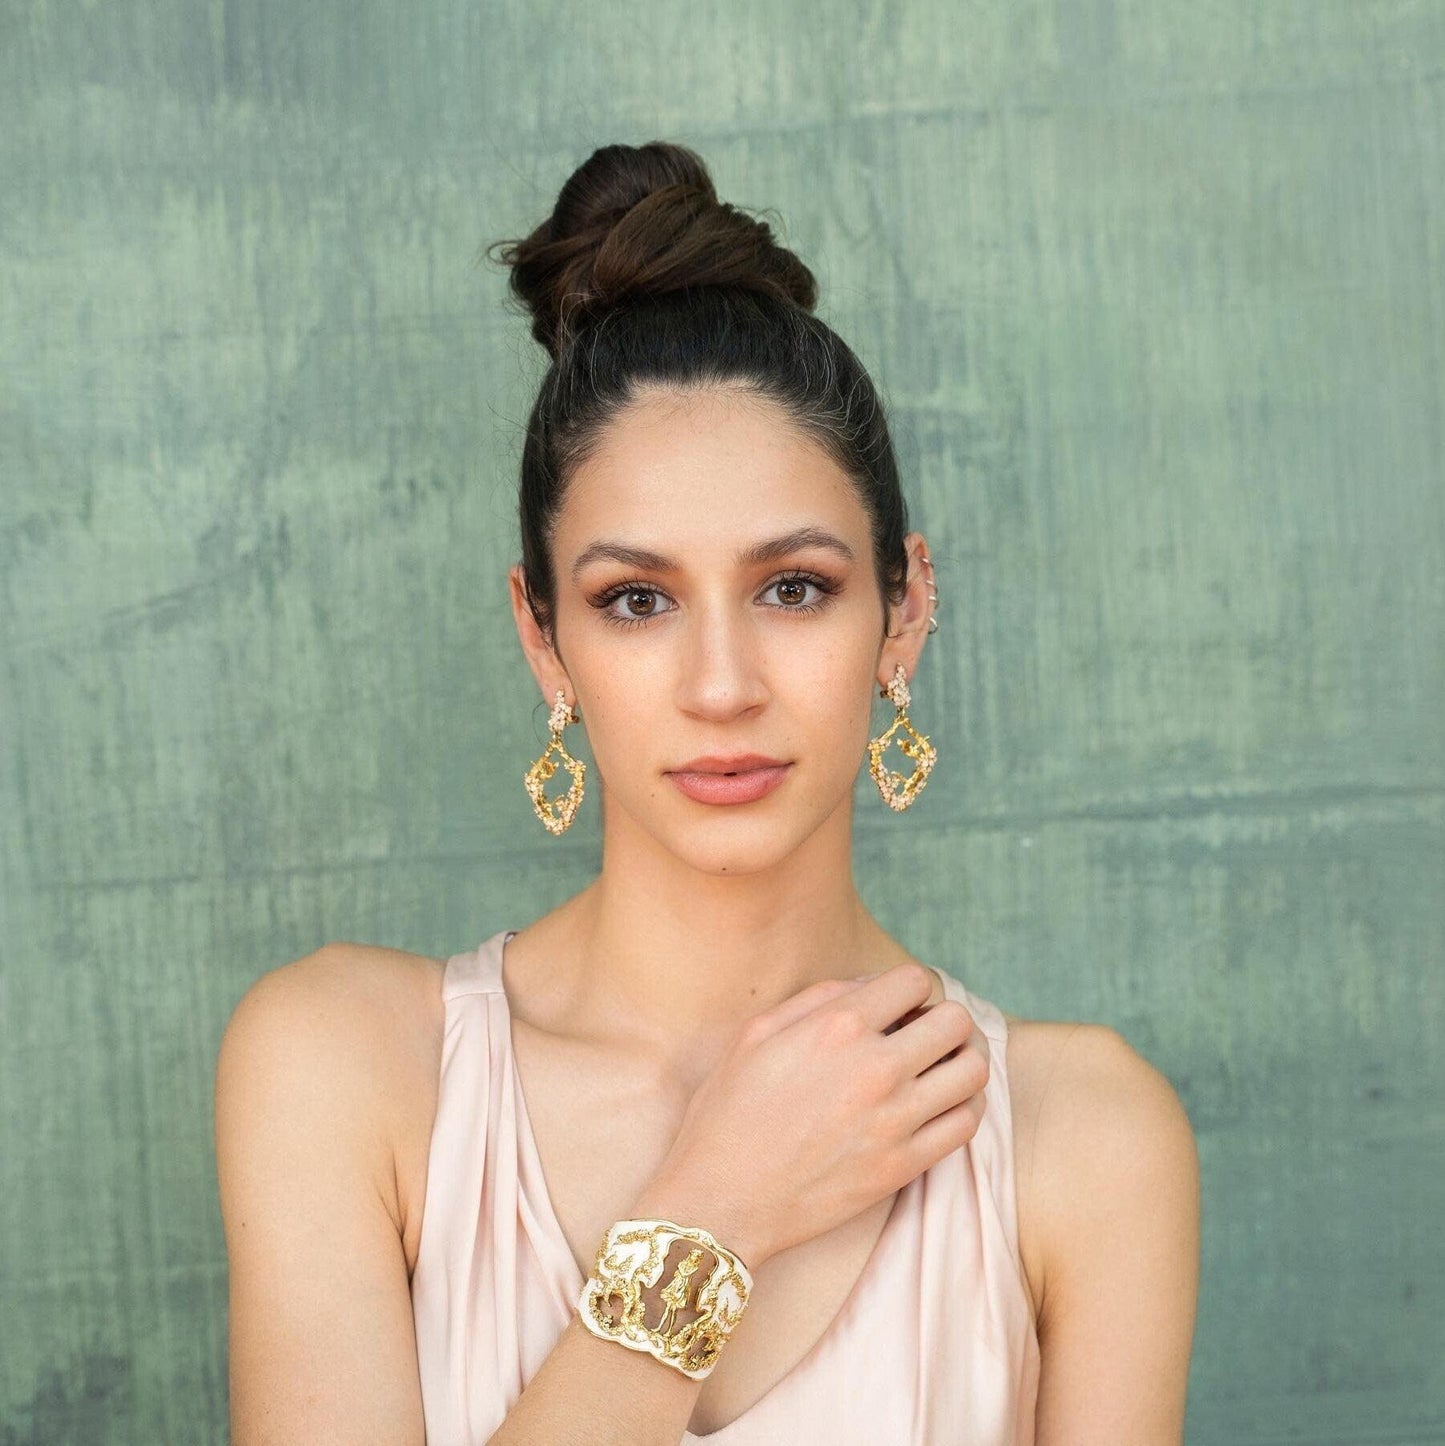 "Harmony" Cuff Bracelet - Gold & Ivory - Angela Mia Jewelry